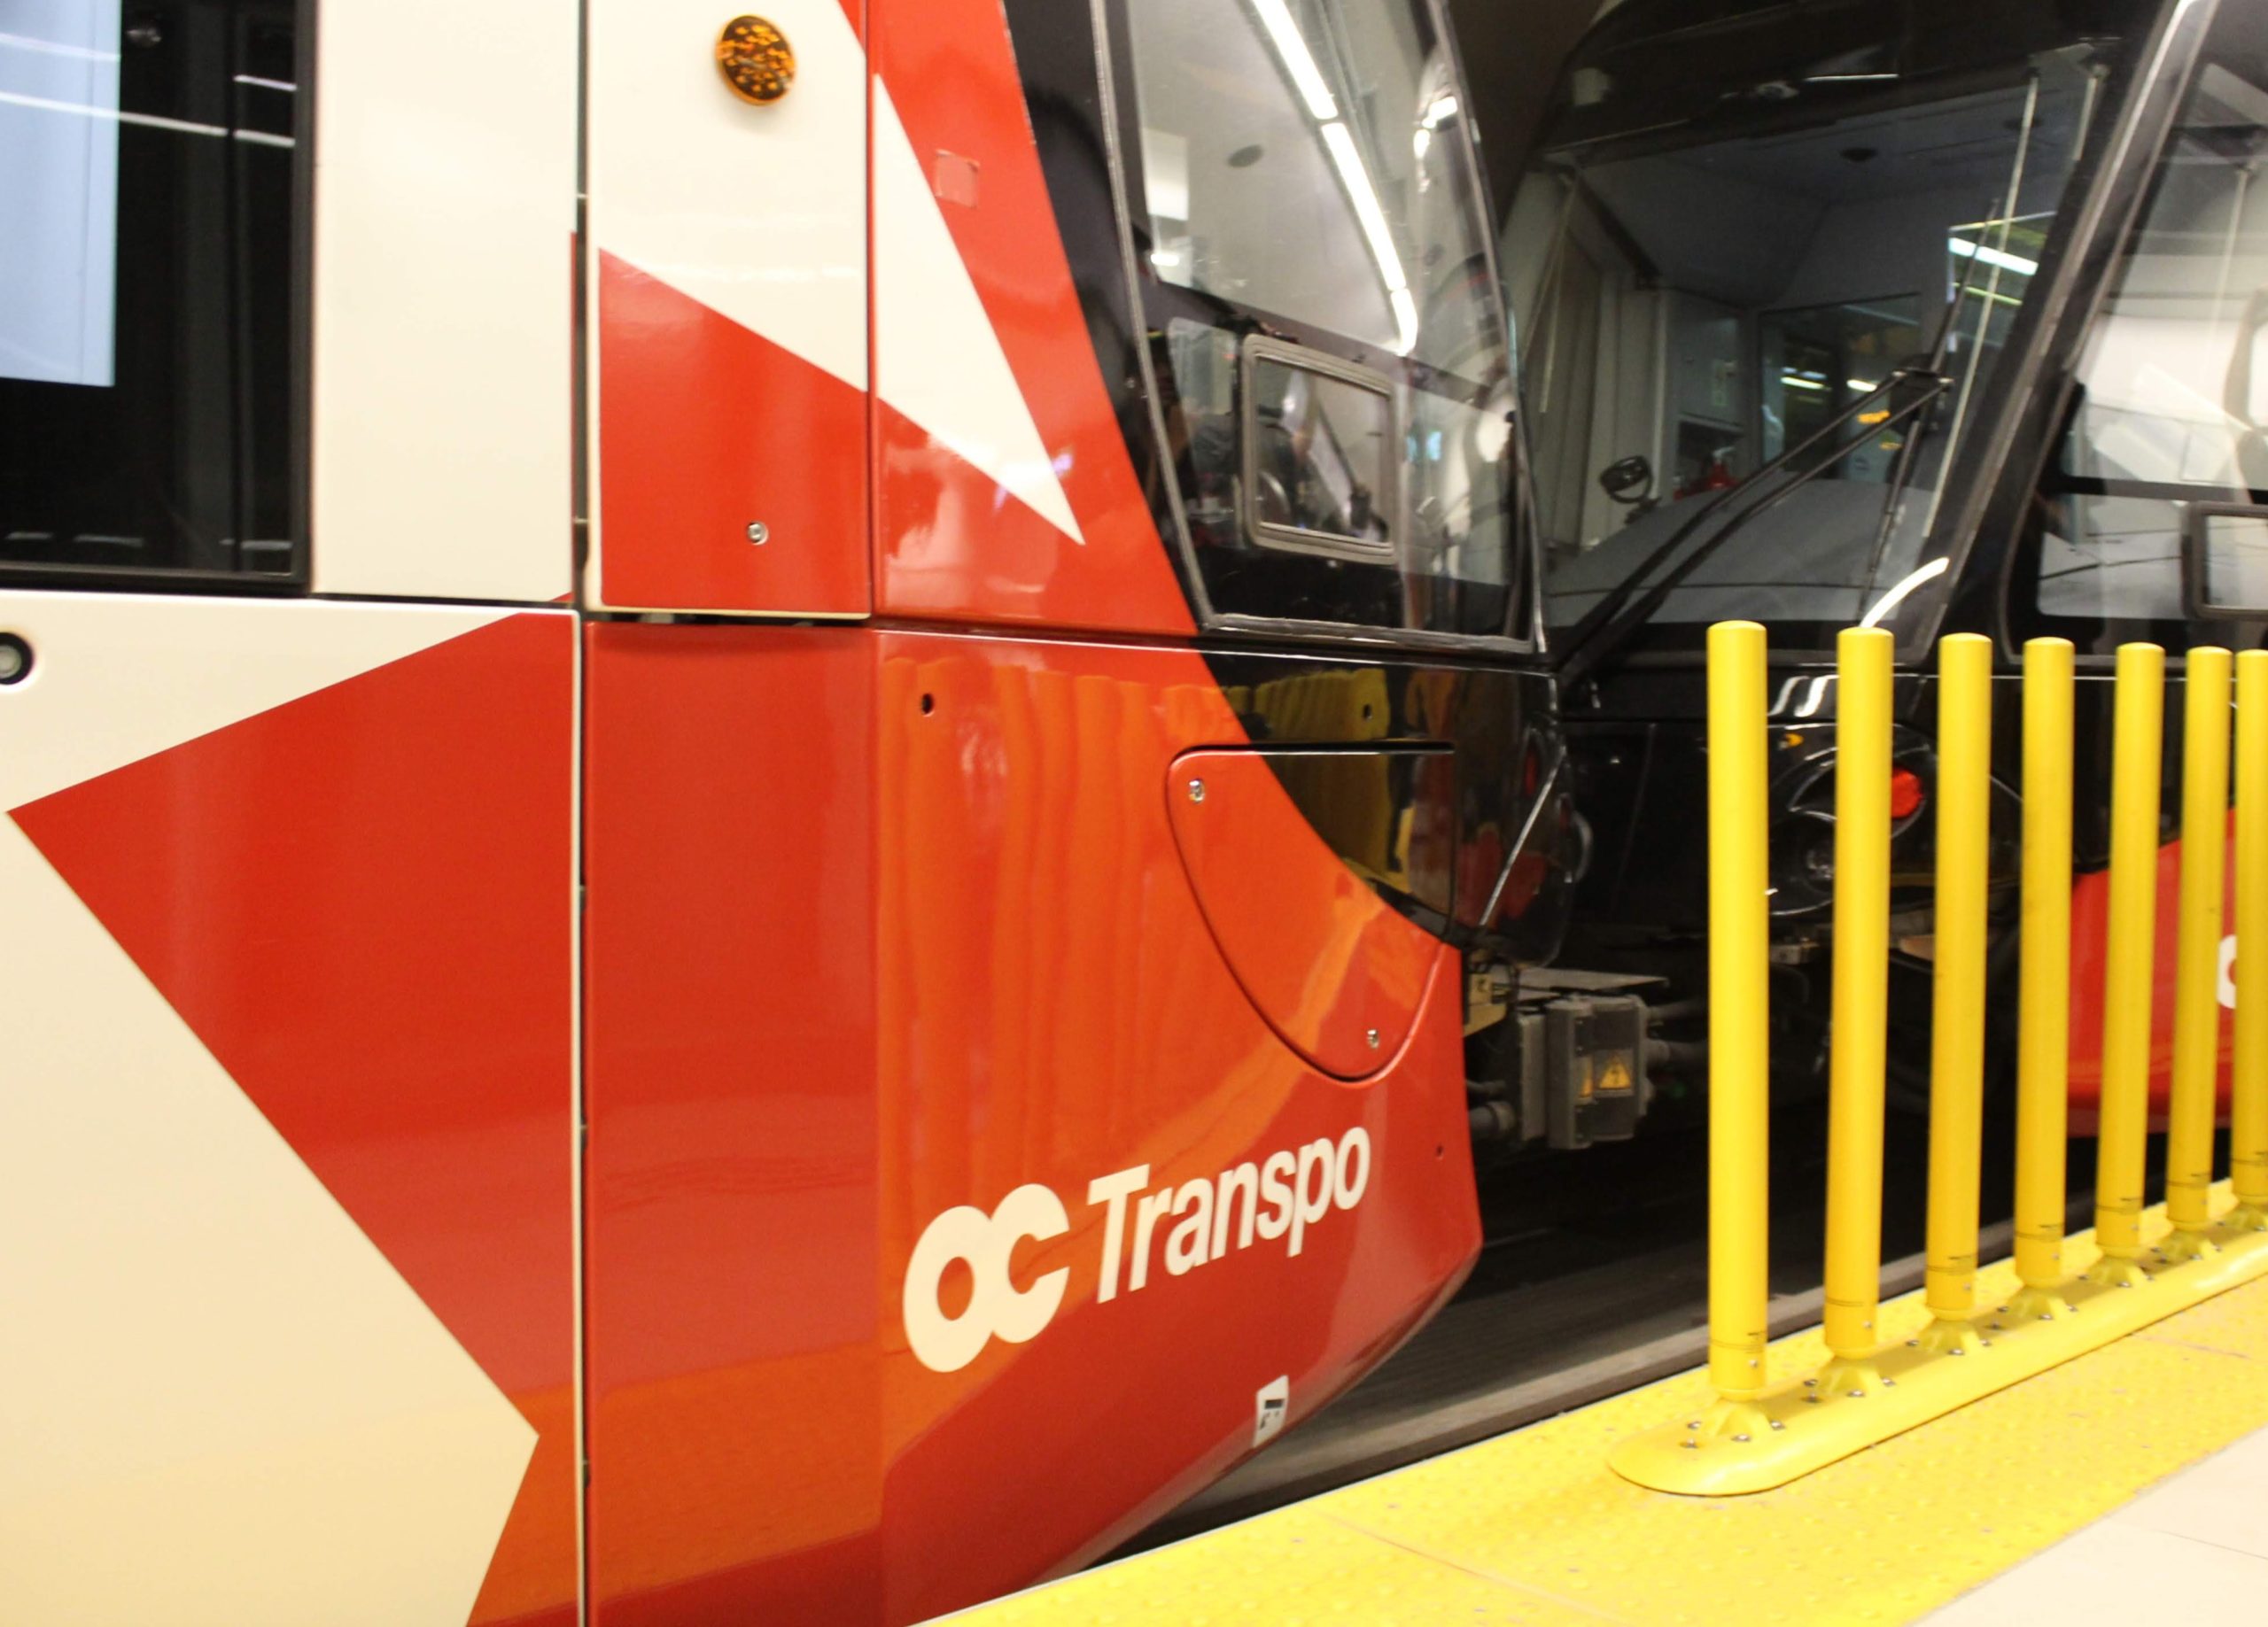 Transit union slams OC Transpo for job cuts